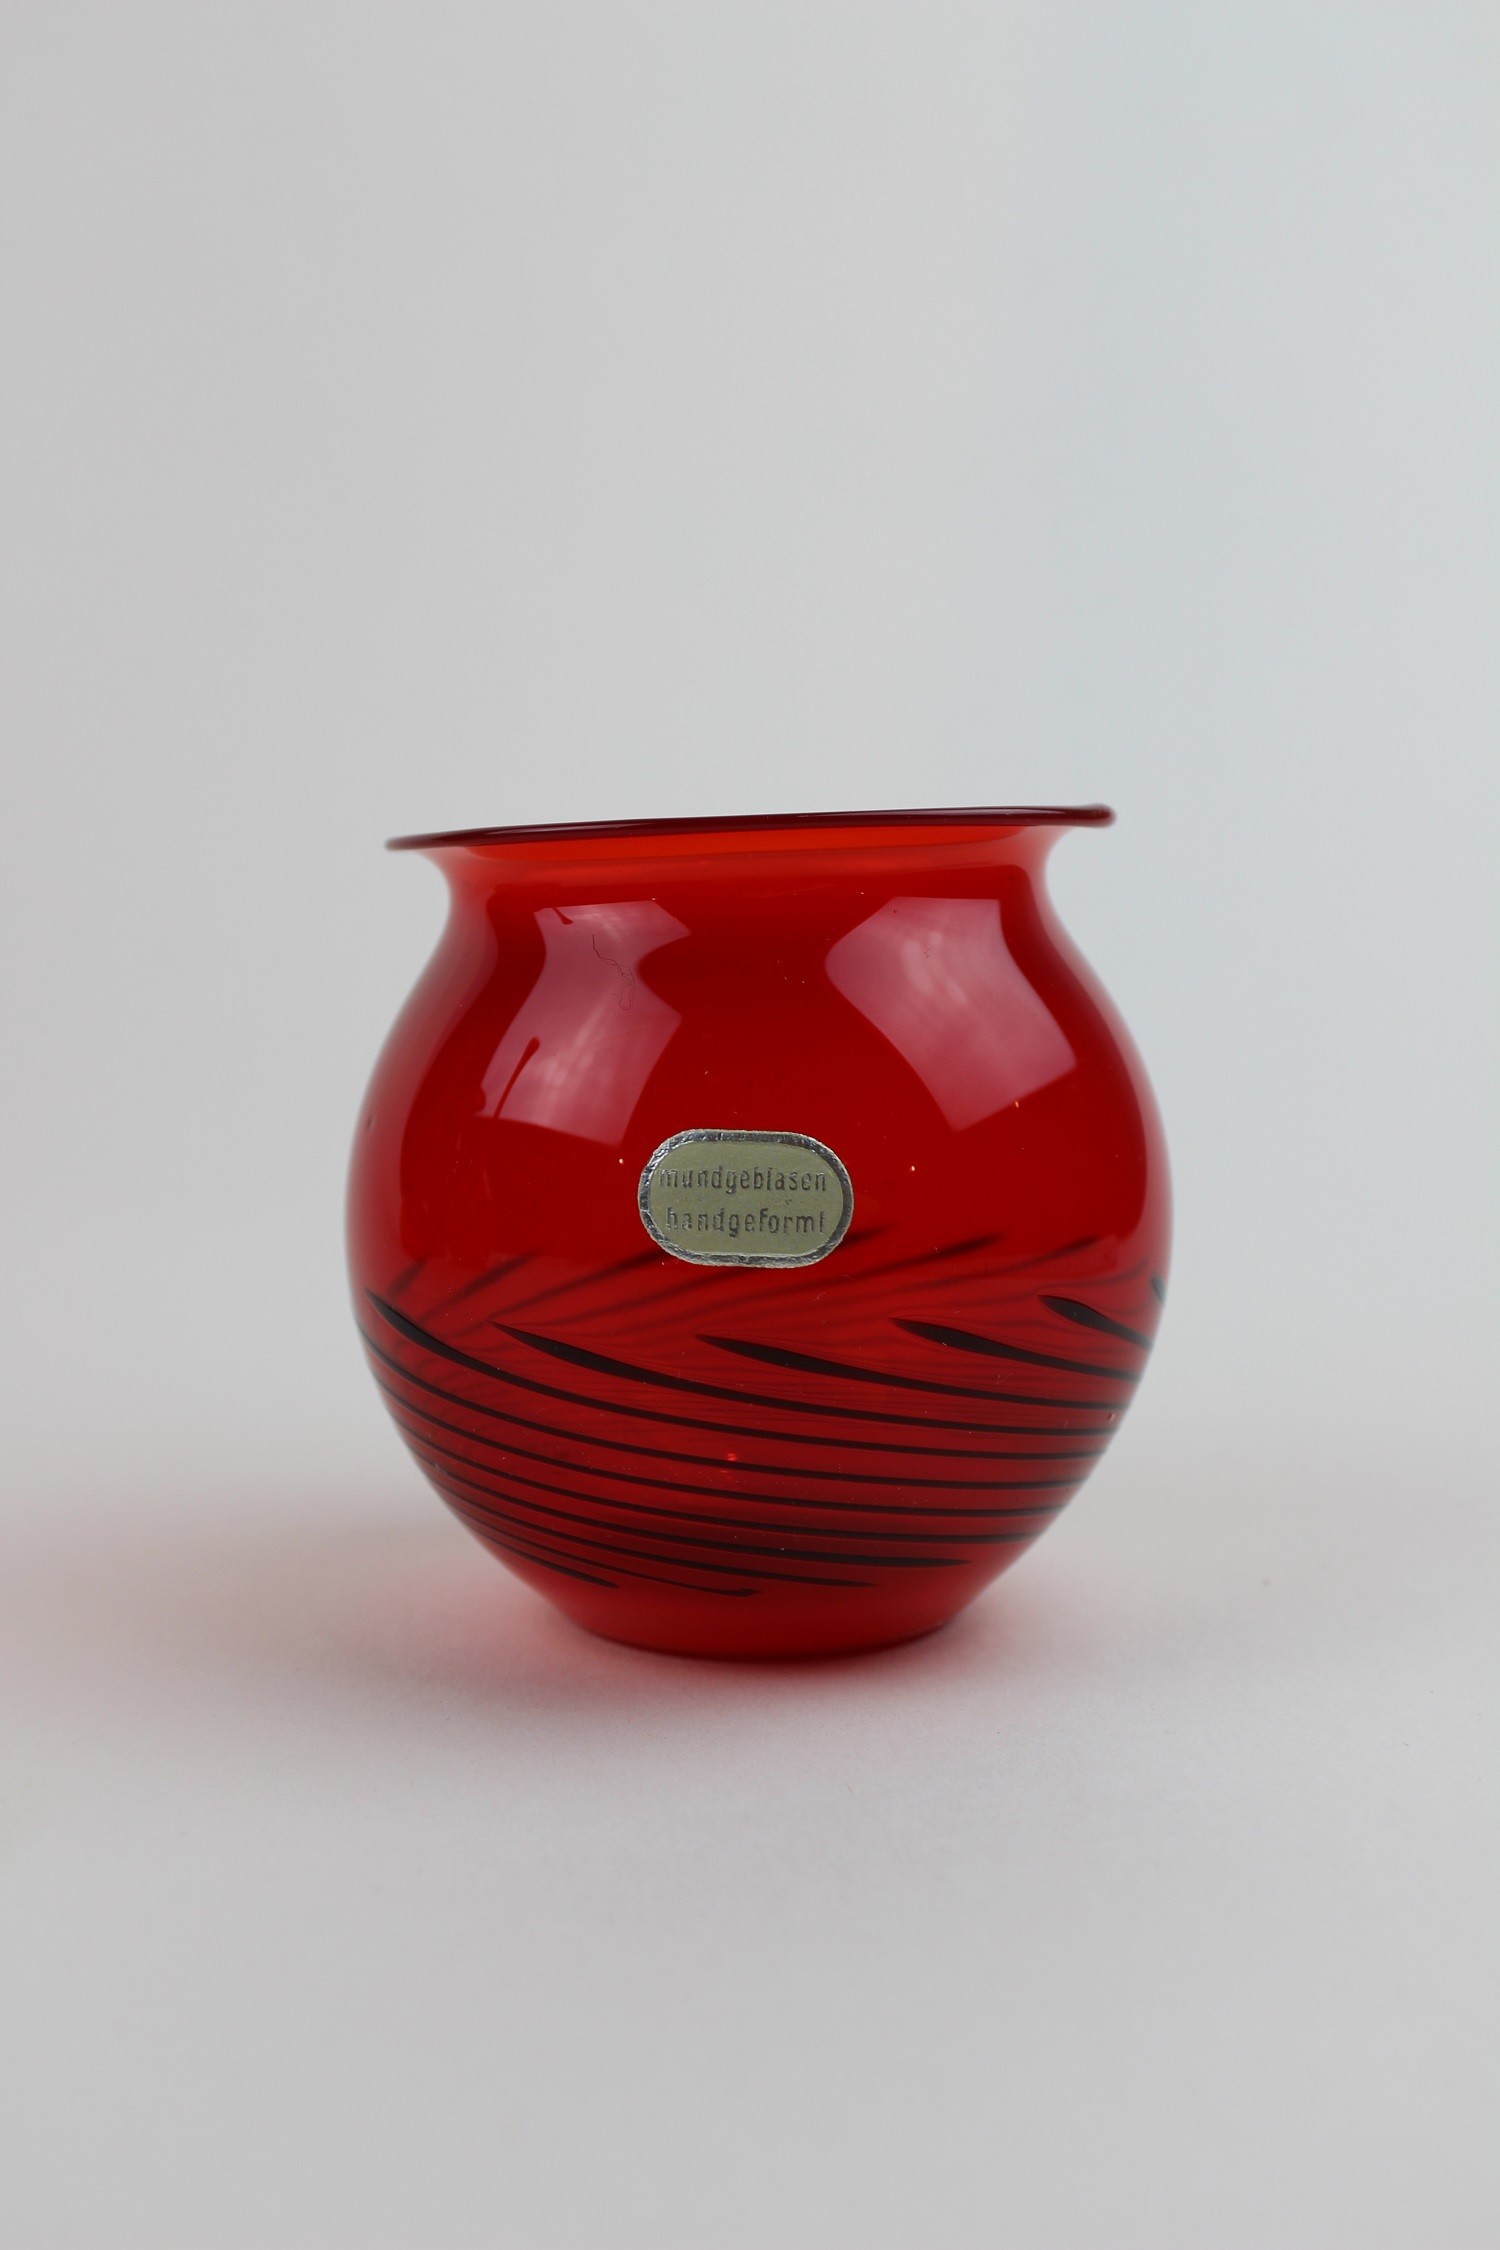 Brilliantrubinrote Vase/Kerzenhalter mit schwarzem Muster und Aufkleber (Museum Baruther Glashütte CC BY-NC-SA)